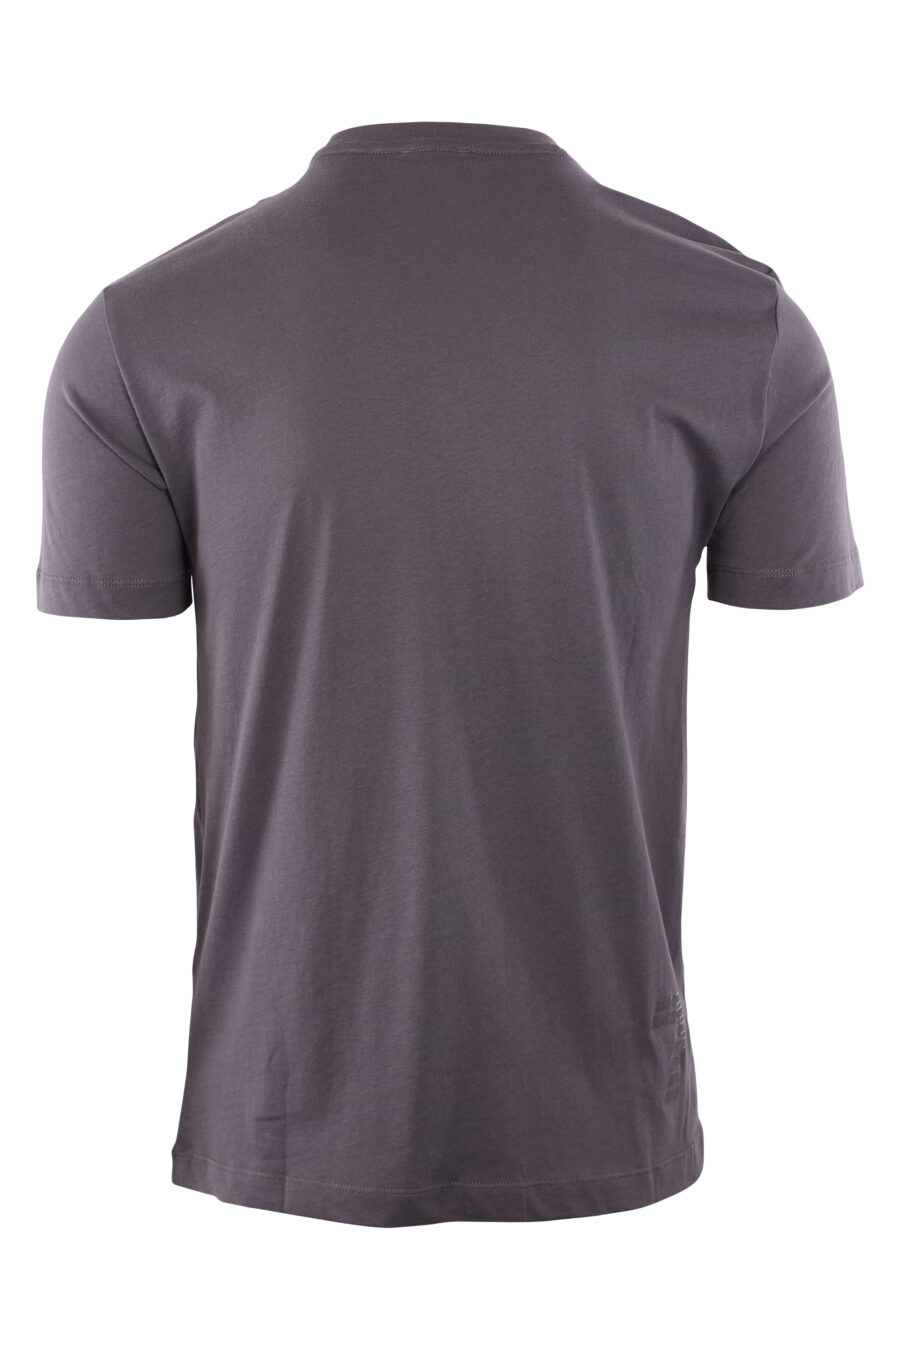 Camiseta gris con maxilogo "lux identity" monocromático - IMG 2813 1